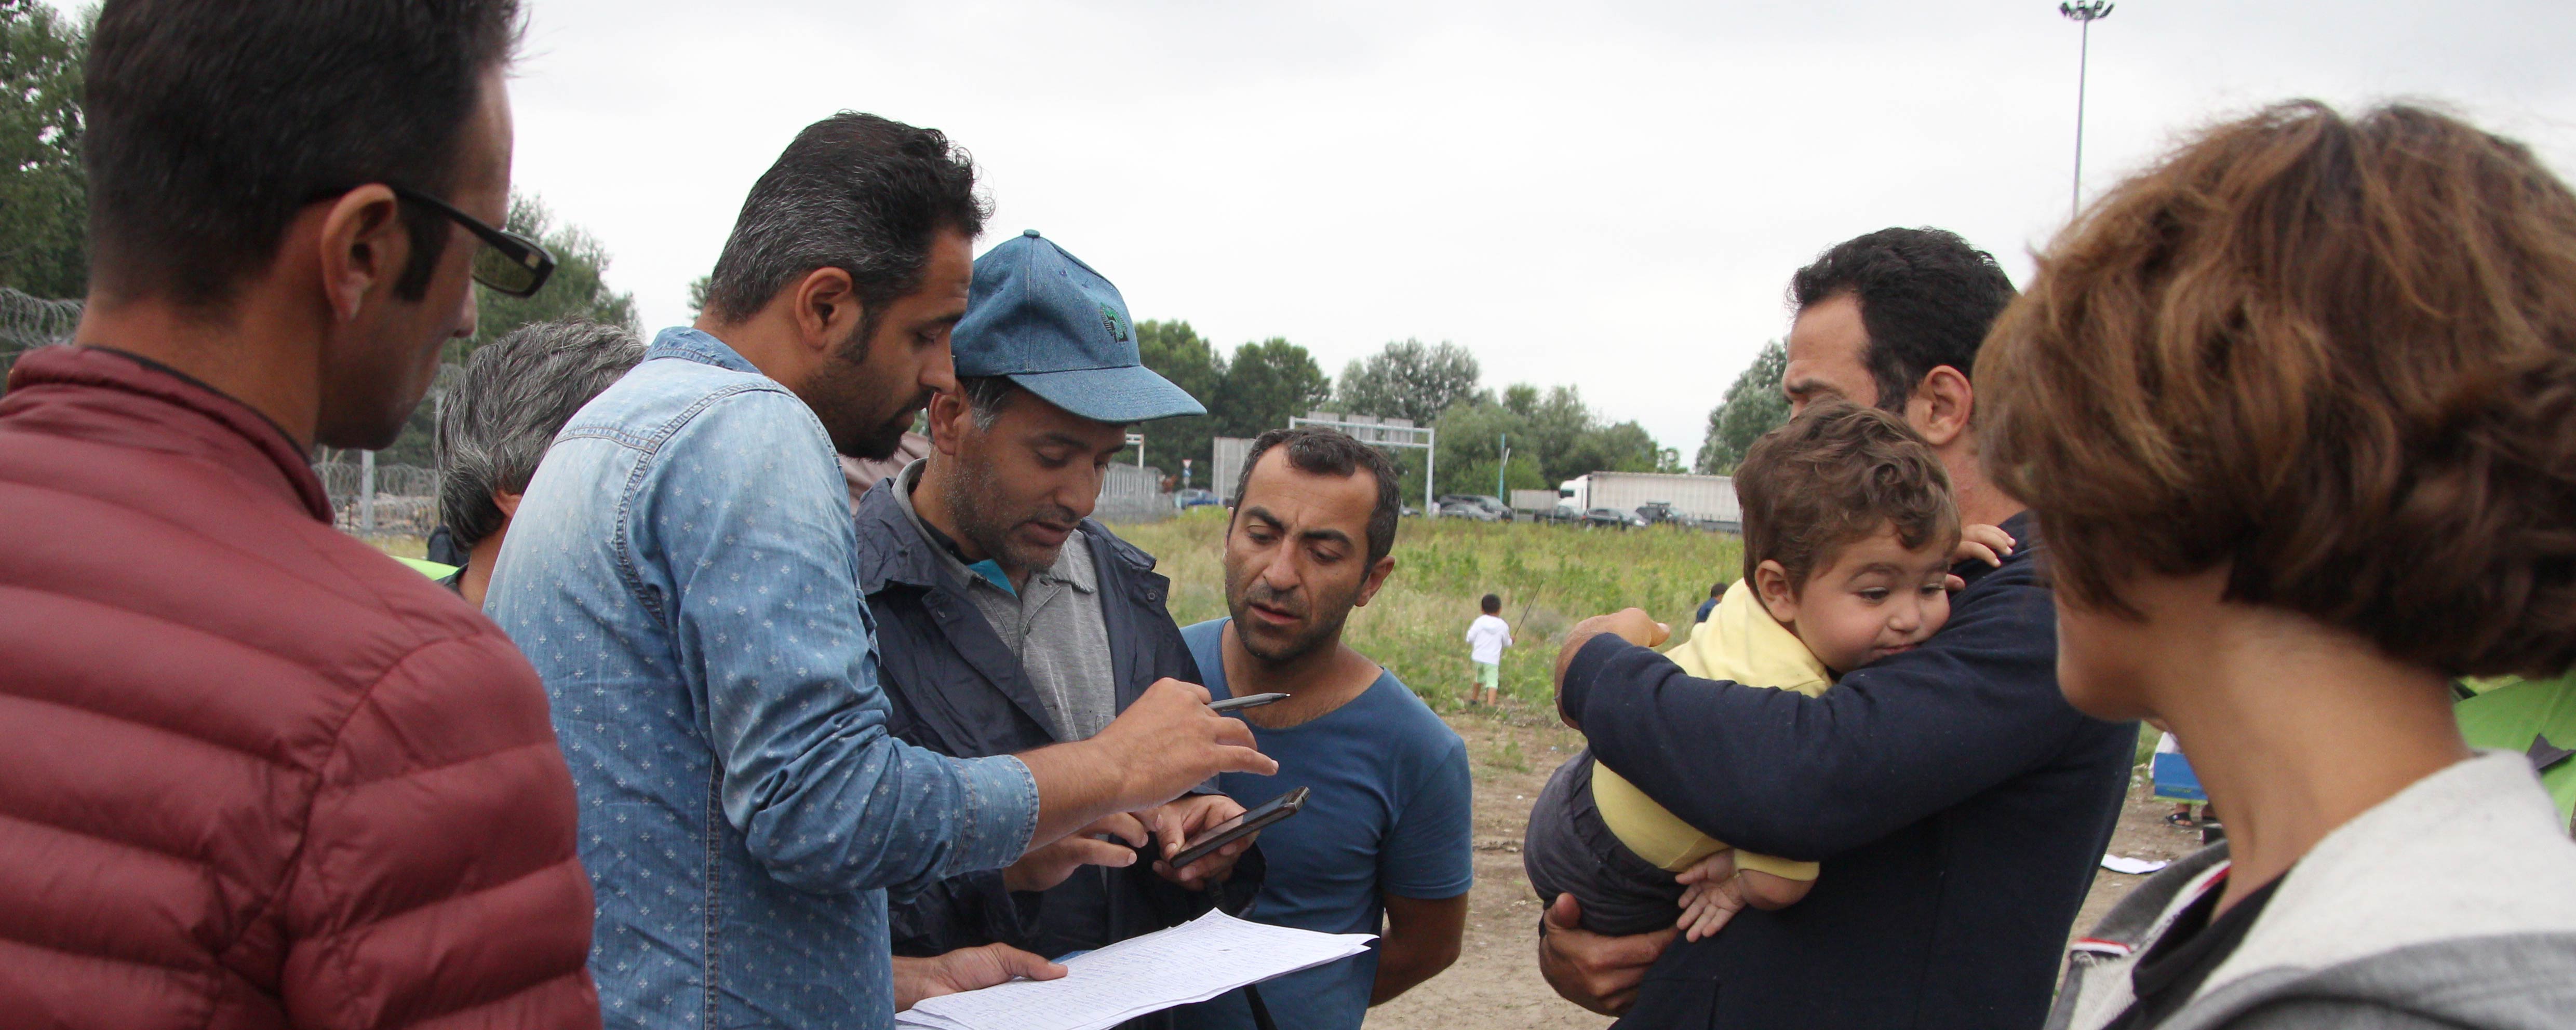 Доклад разкрива бездомни бежанци и търсещи закрила в България